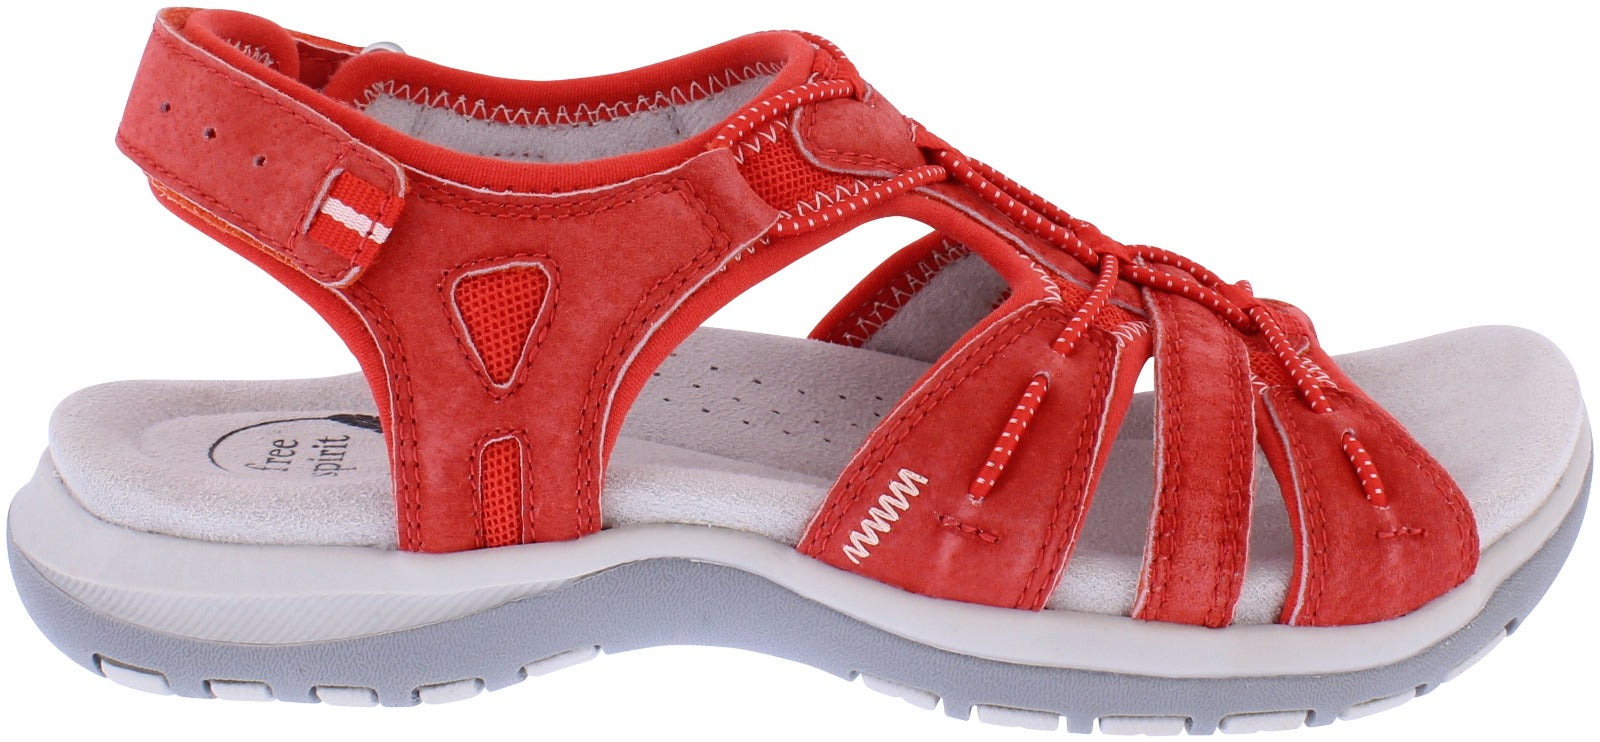 Free Spirit 41057 Fairmont 2 Ladies Grenadine Leather Arch Support Touch Fastening Sandals